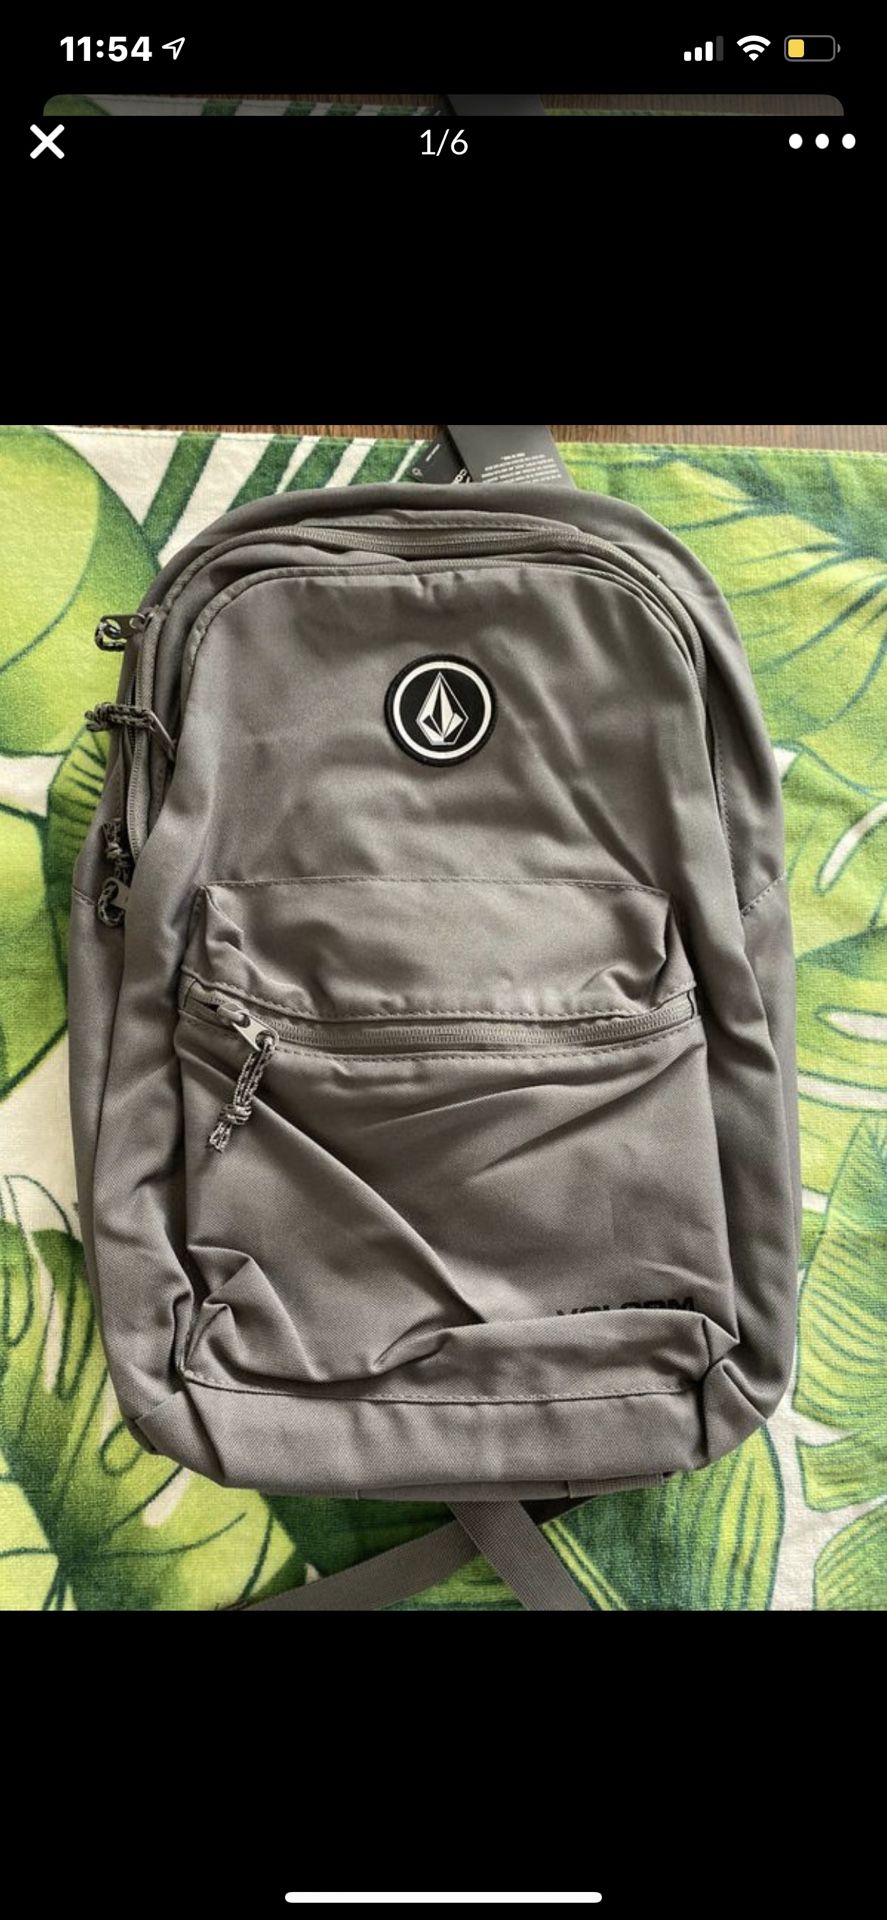 Volcom backpacks